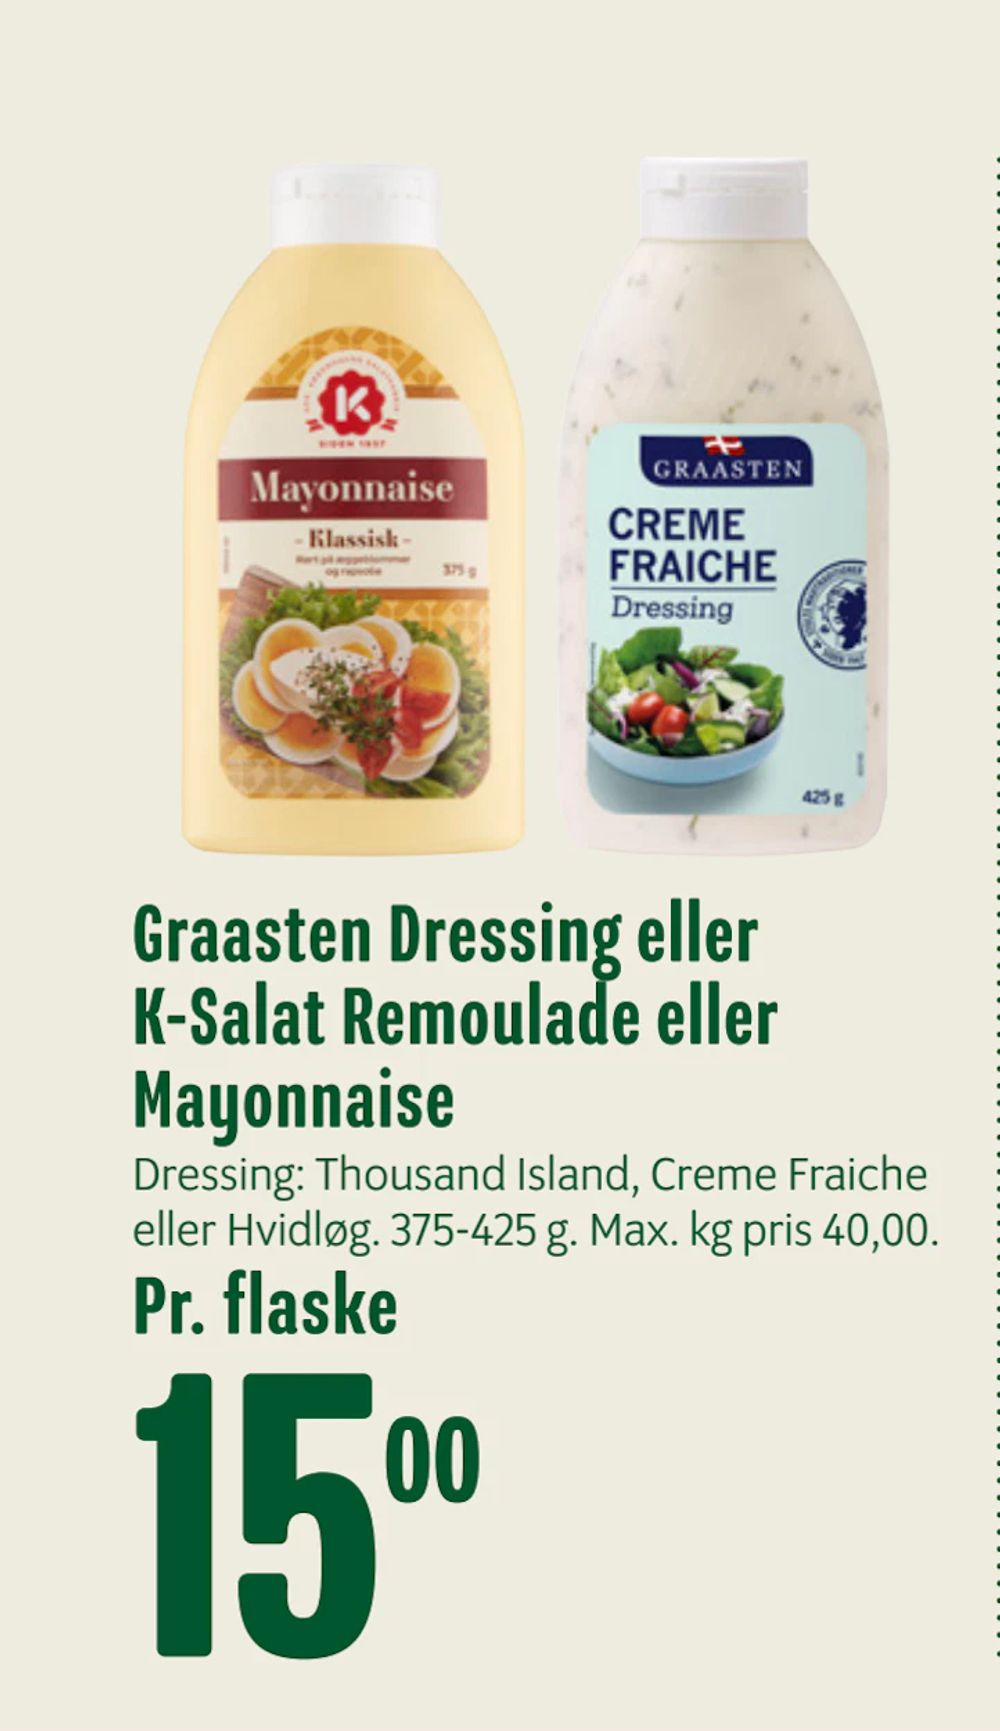 Tilbud på Graasten Dressing eller K-Salat Remoulade eller Mayonnaise fra Min Købmand til 15 kr.